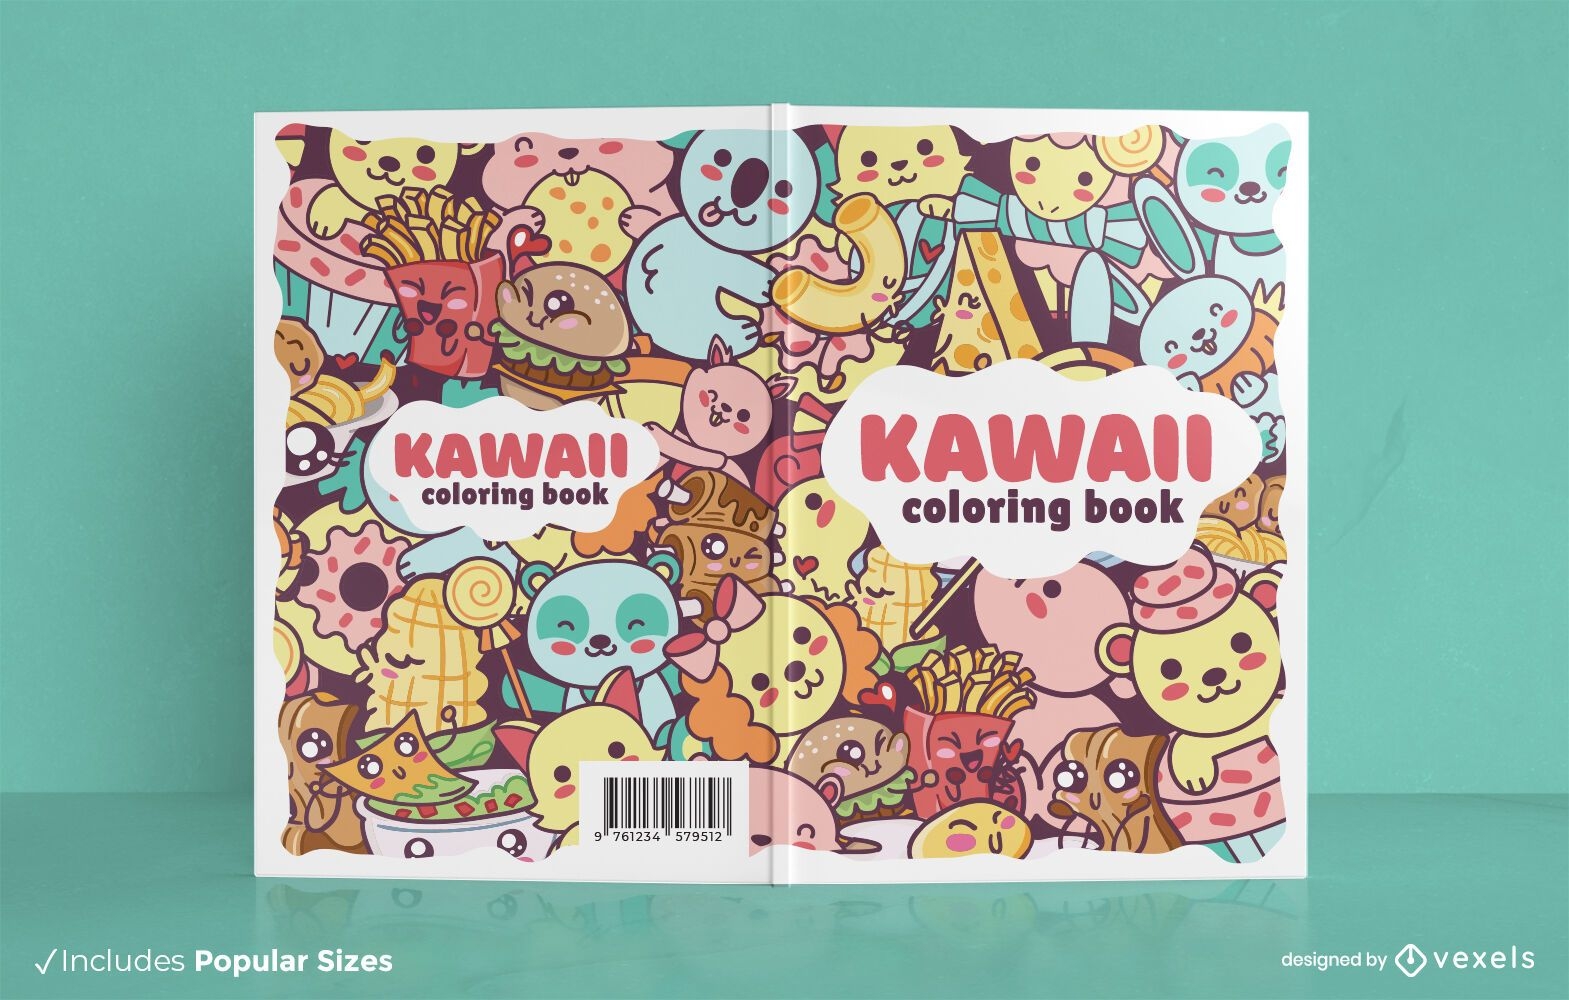 Desenho da capa do livro de colorir Kawaii